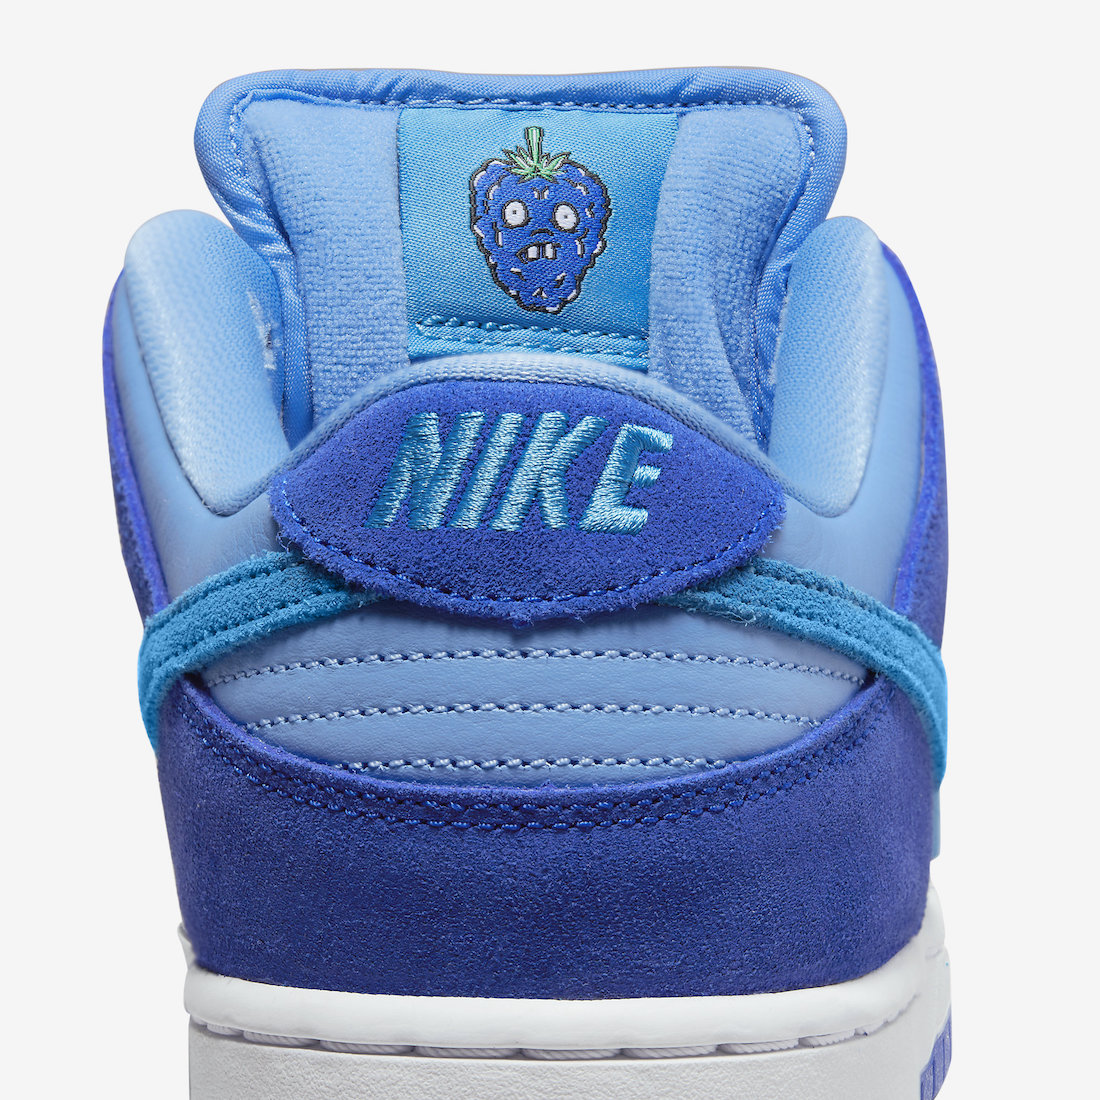 Nike SB Dunk Low Blue Raspberry DM0807 400 Release Date 8